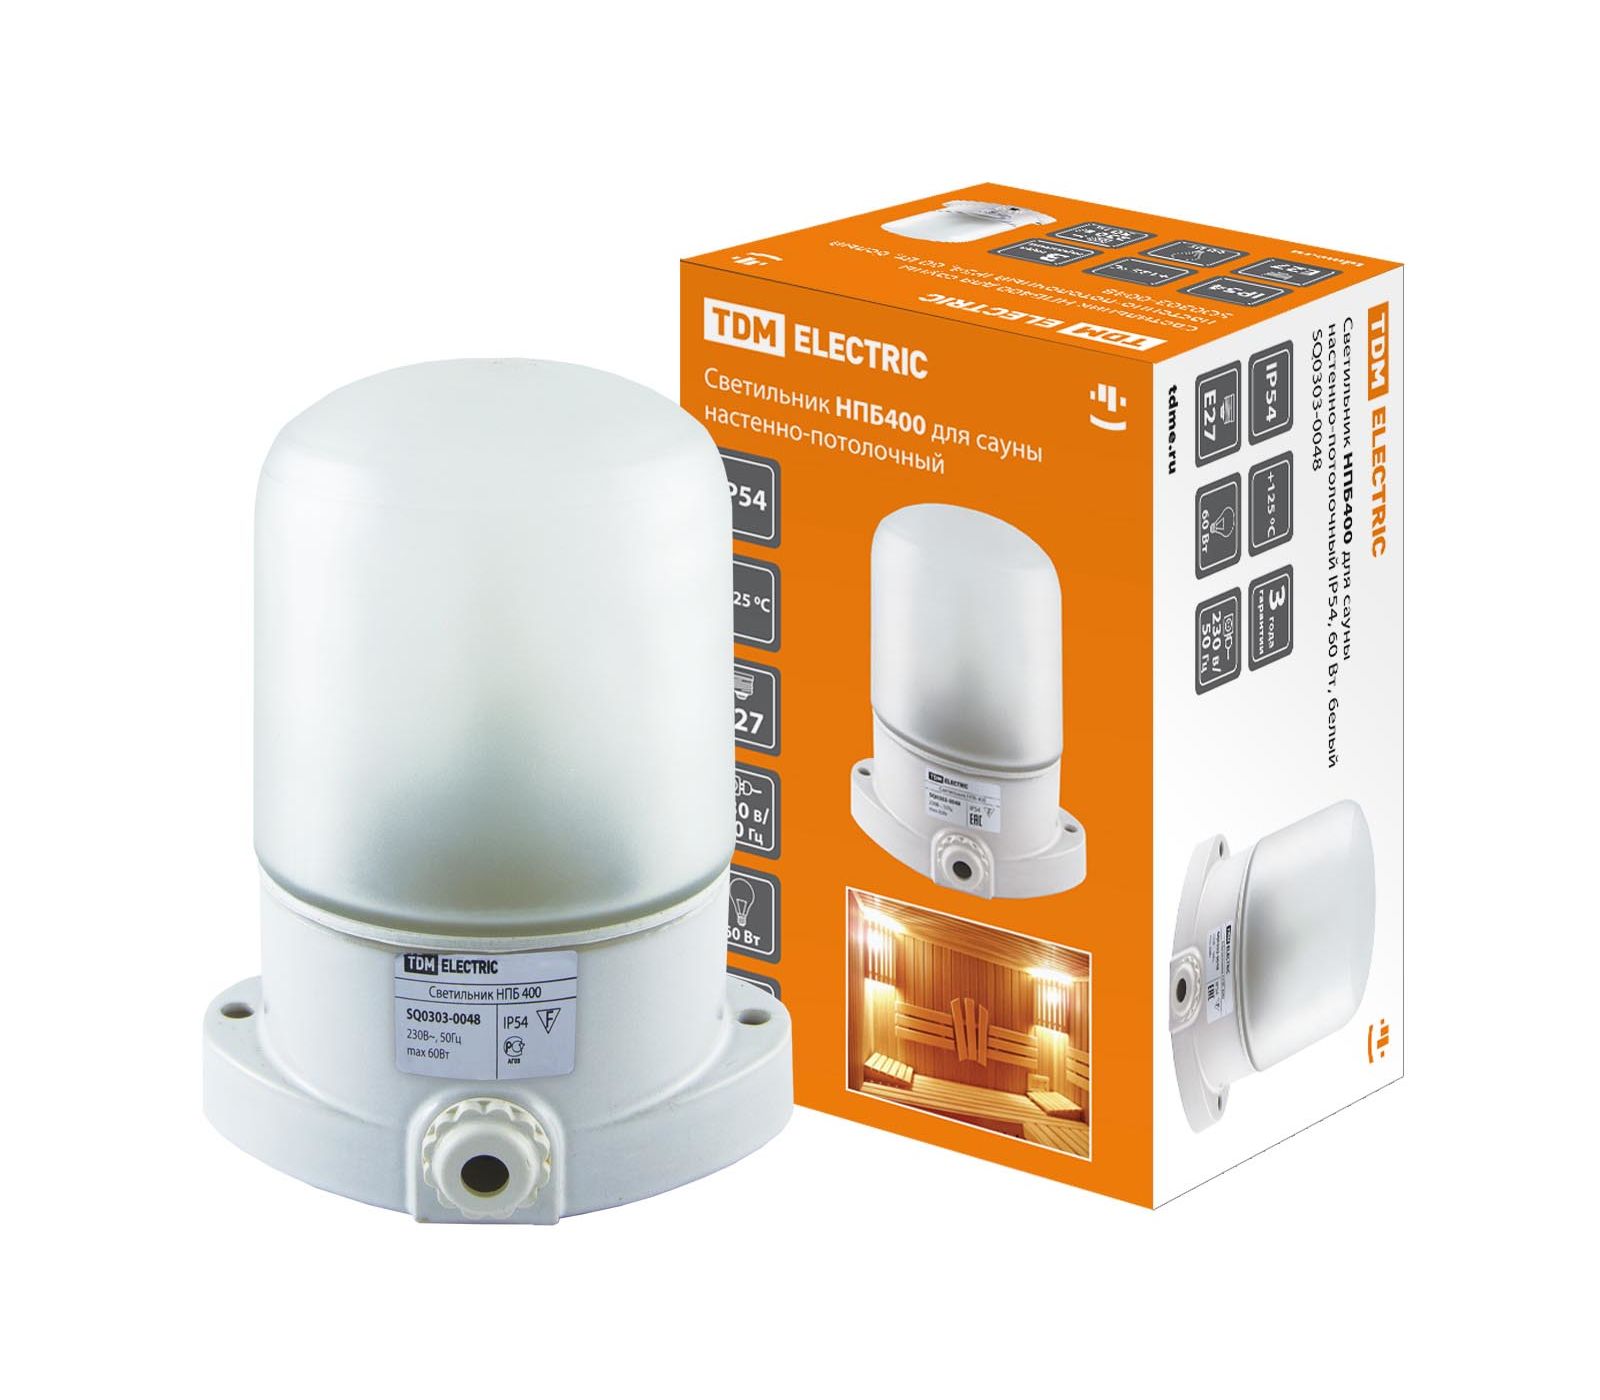 Купить светильник "tdm" для сауны настенно-потолочный прямой  нпб400 е27 60вт ip54 (диапазон температур -70..+125 градусов) | КилоВатт